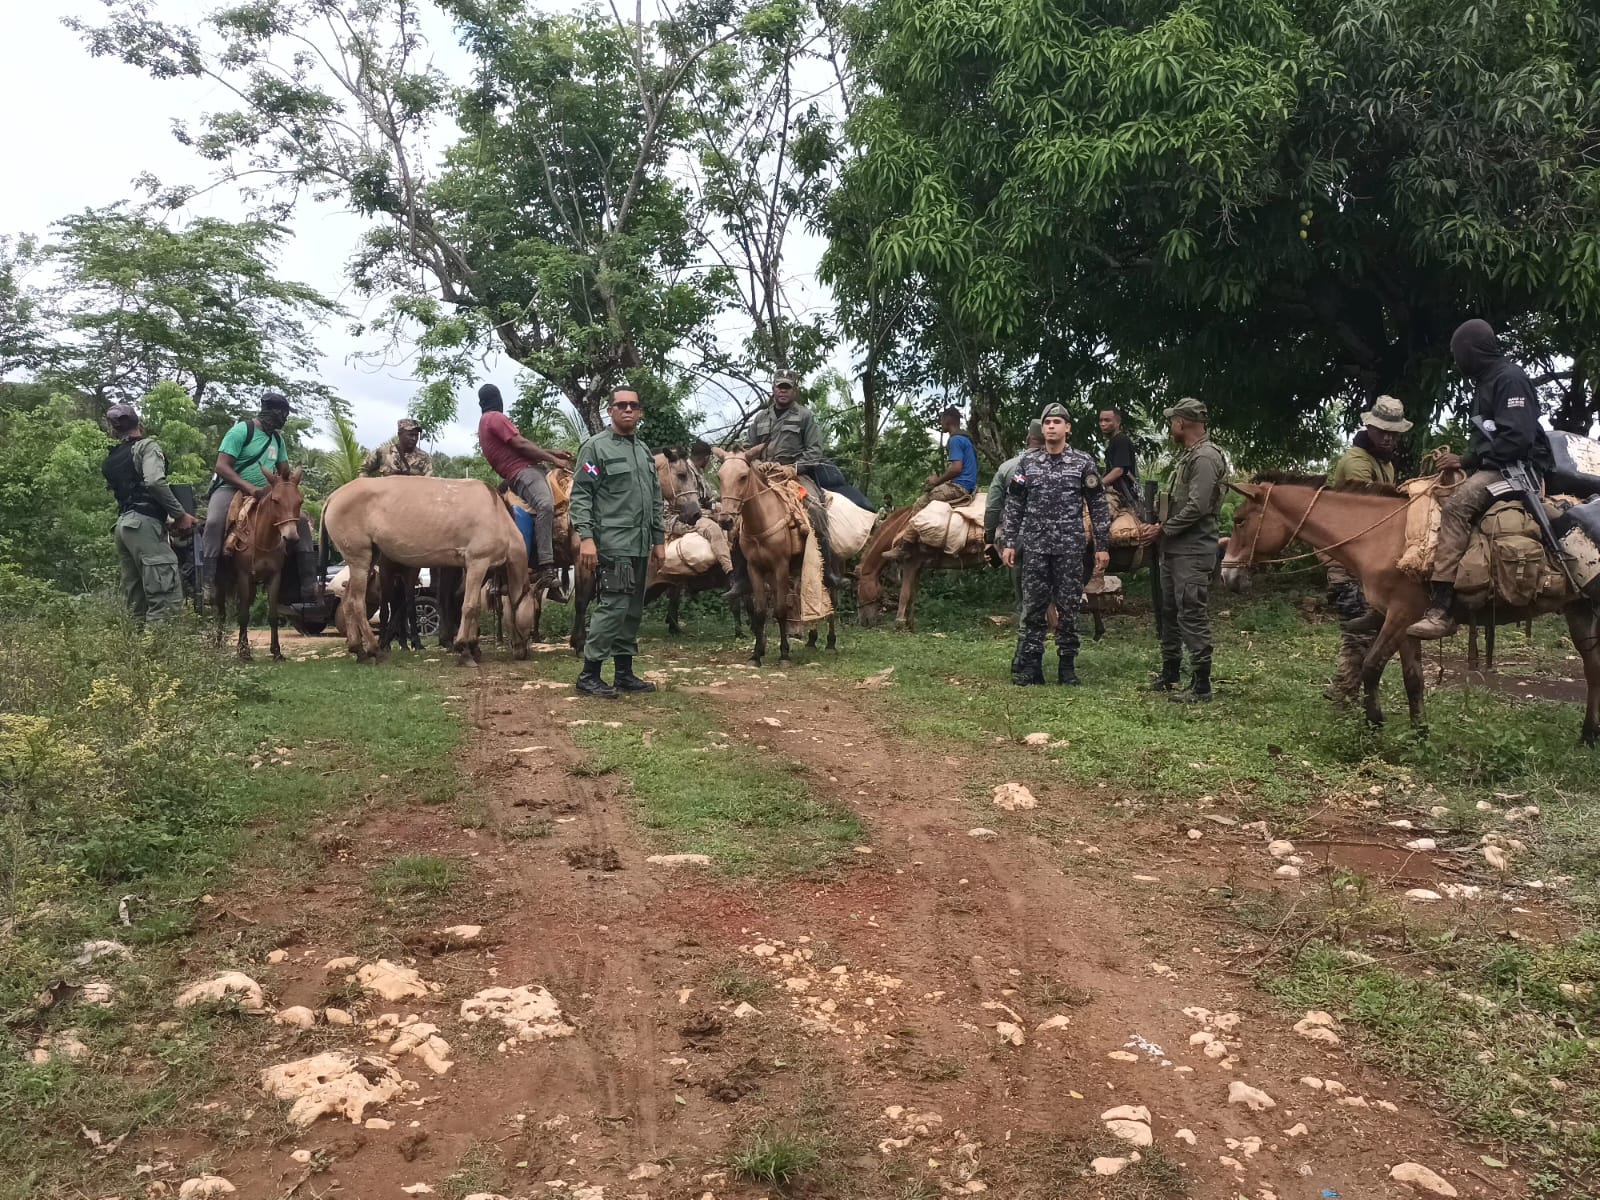 REPÚBLICA DOMINICANA: Intervención en Los Haitises concluye con el arresto de 439 desaprensivos que depredaban el parque nacional